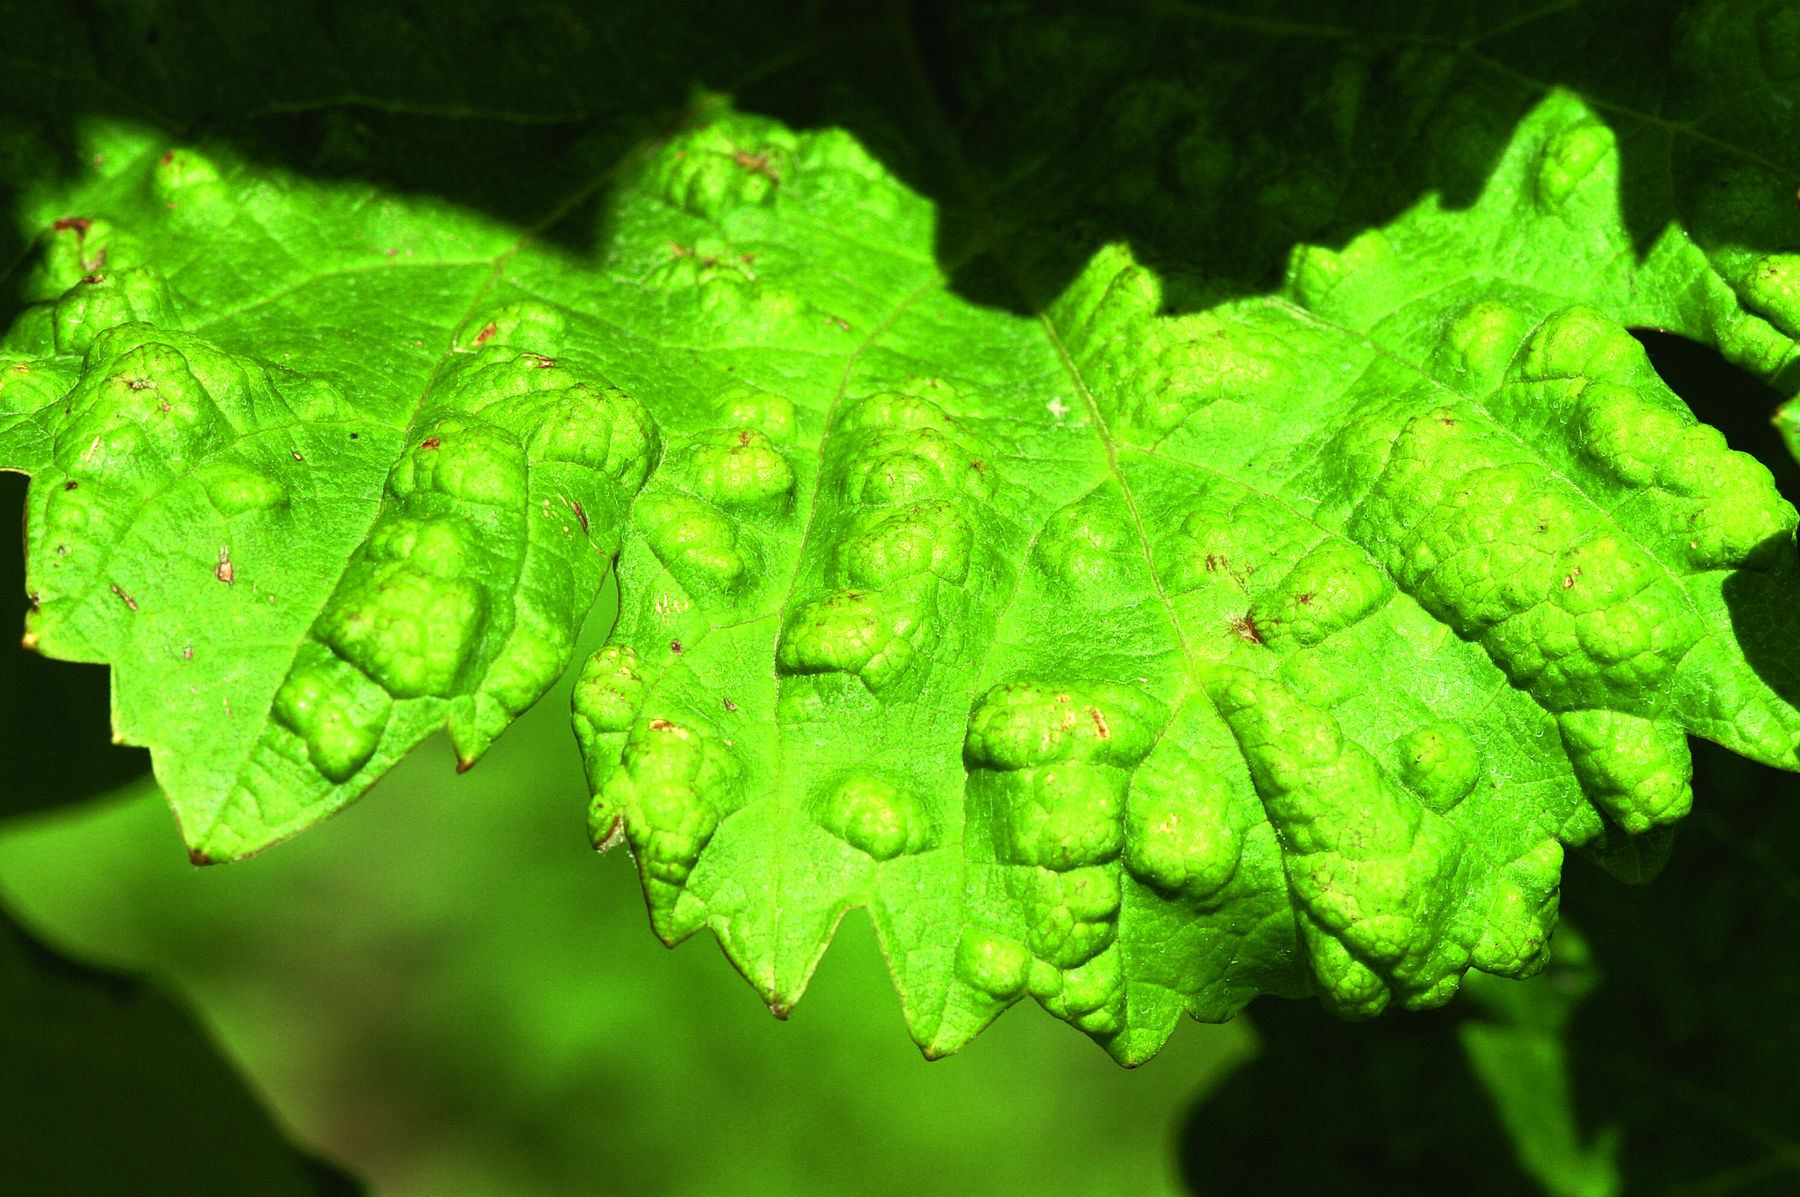 Pocken auf der Blattoberseite verursacht durch die Saugtätigkeit der Pockenmilbe auf der Blattunterseite © E. Kührer, WBS